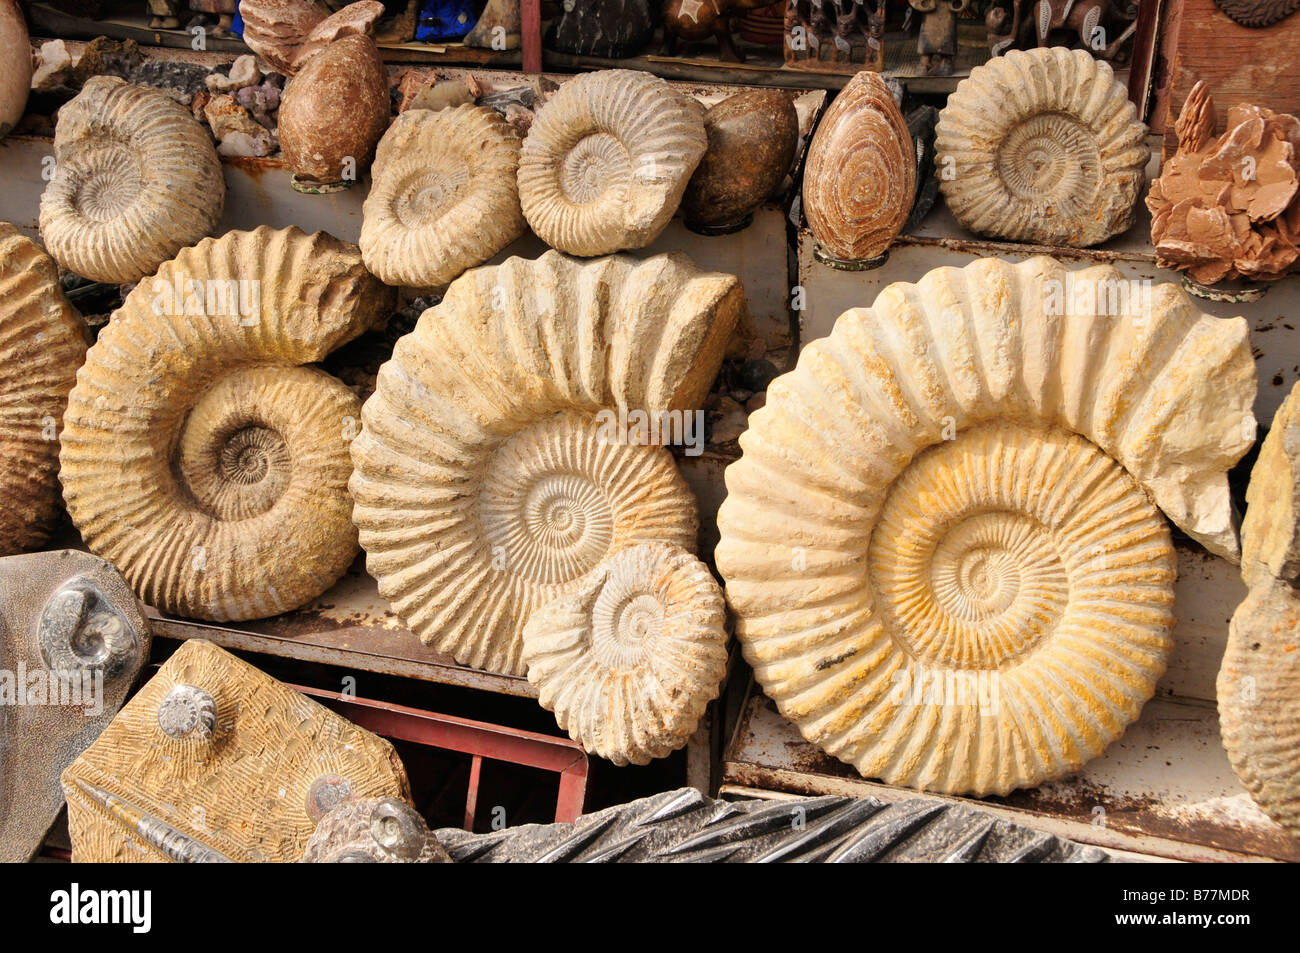 Les fossiles de l'Atlas à proximité dans le souk, le marché, dans la Medina, centre-ville historique de Marrakech, Maroc, Afrique Banque D'Images